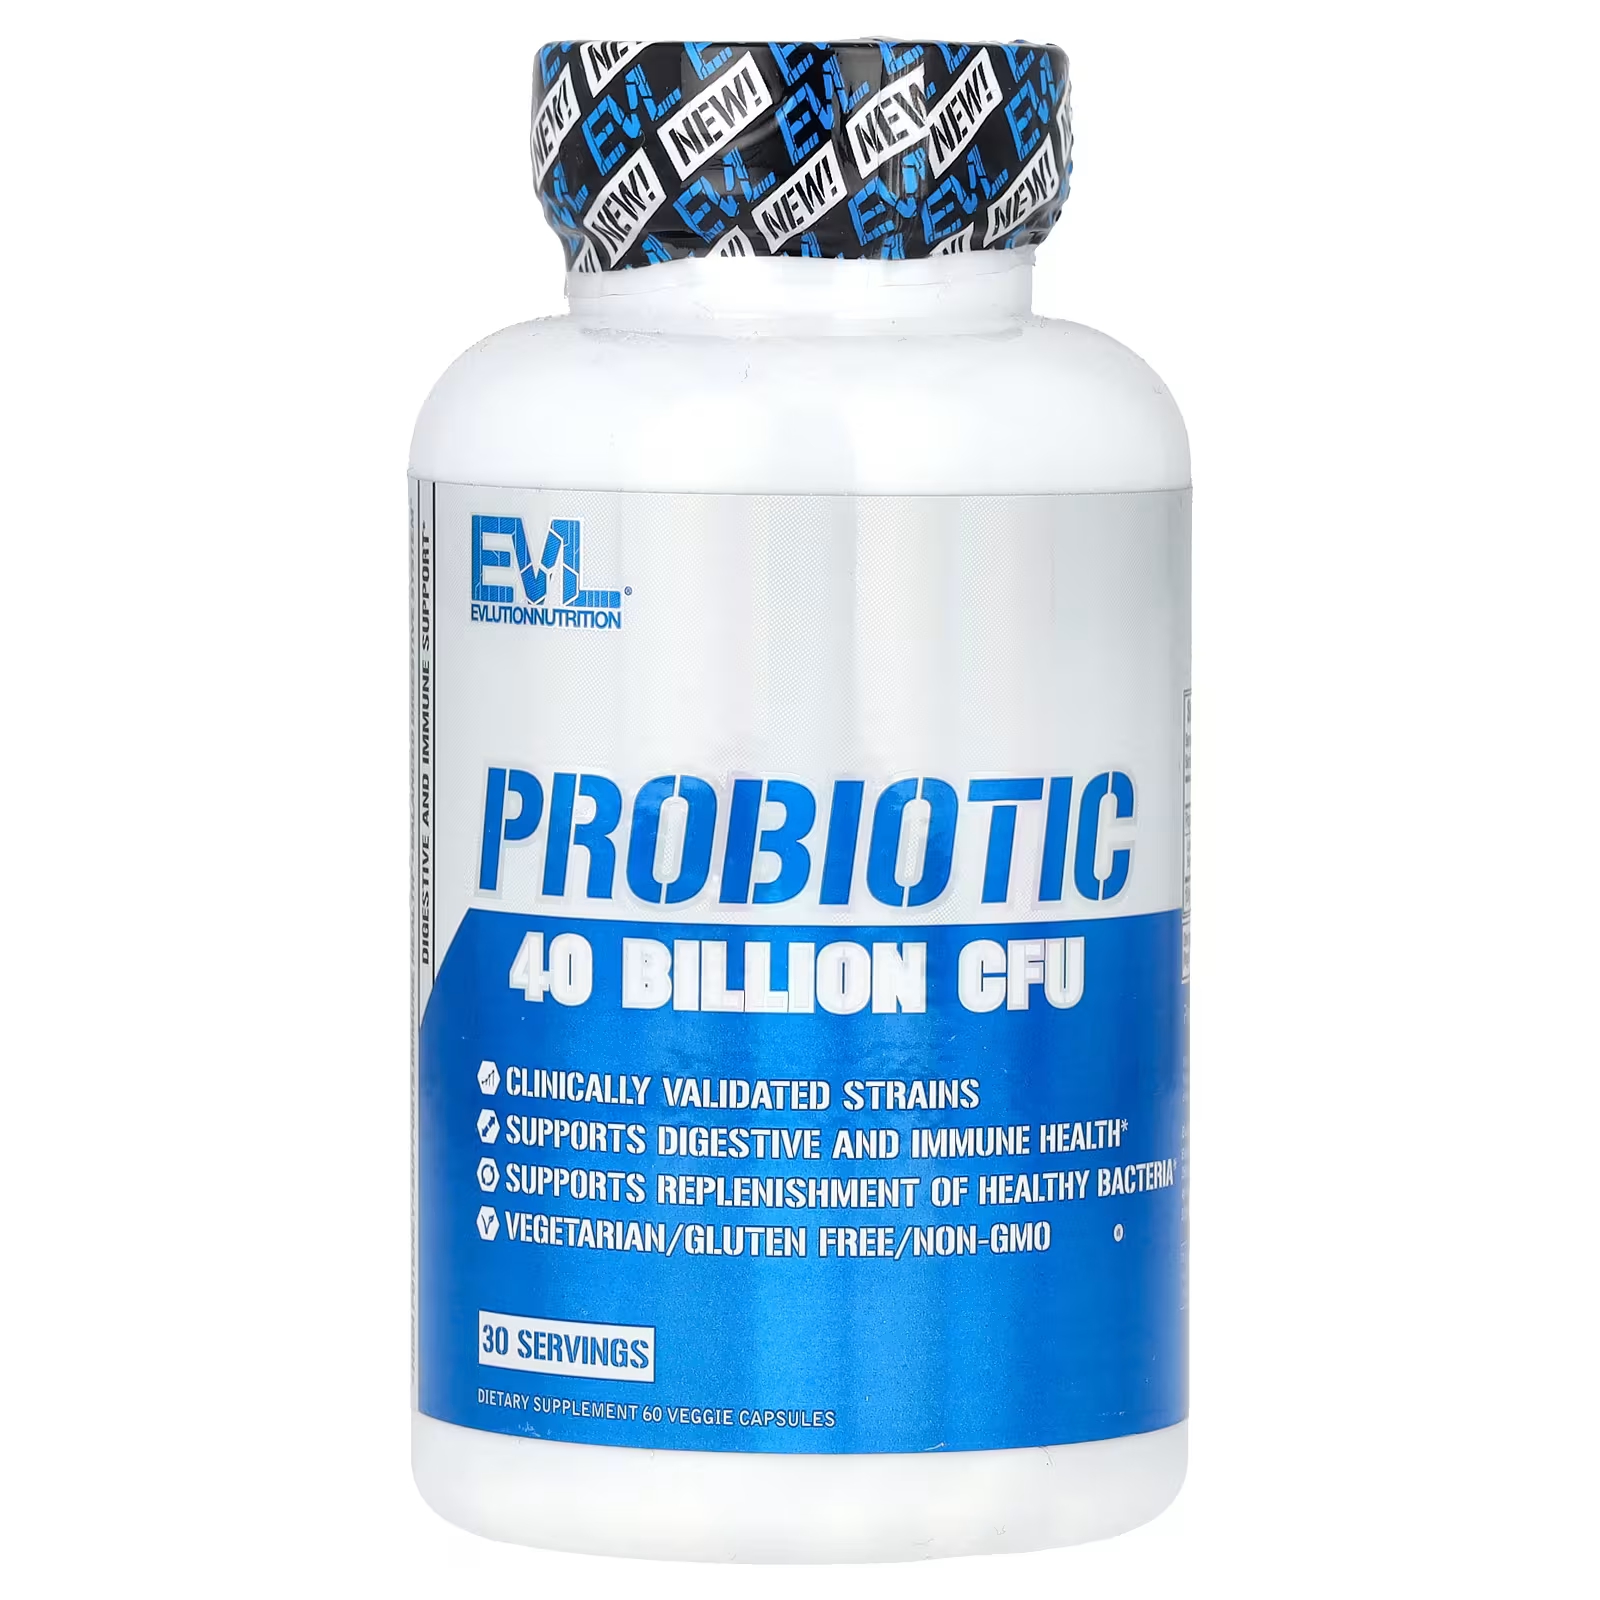 Пробиотик EVLution Nutrition, 40 миллиардов КОЕ, 60 растительных капсул (20 миллиардов КОЕ на капсулу) evlution nutrition пробиотик 40 млрд кое 60 растительных капсул